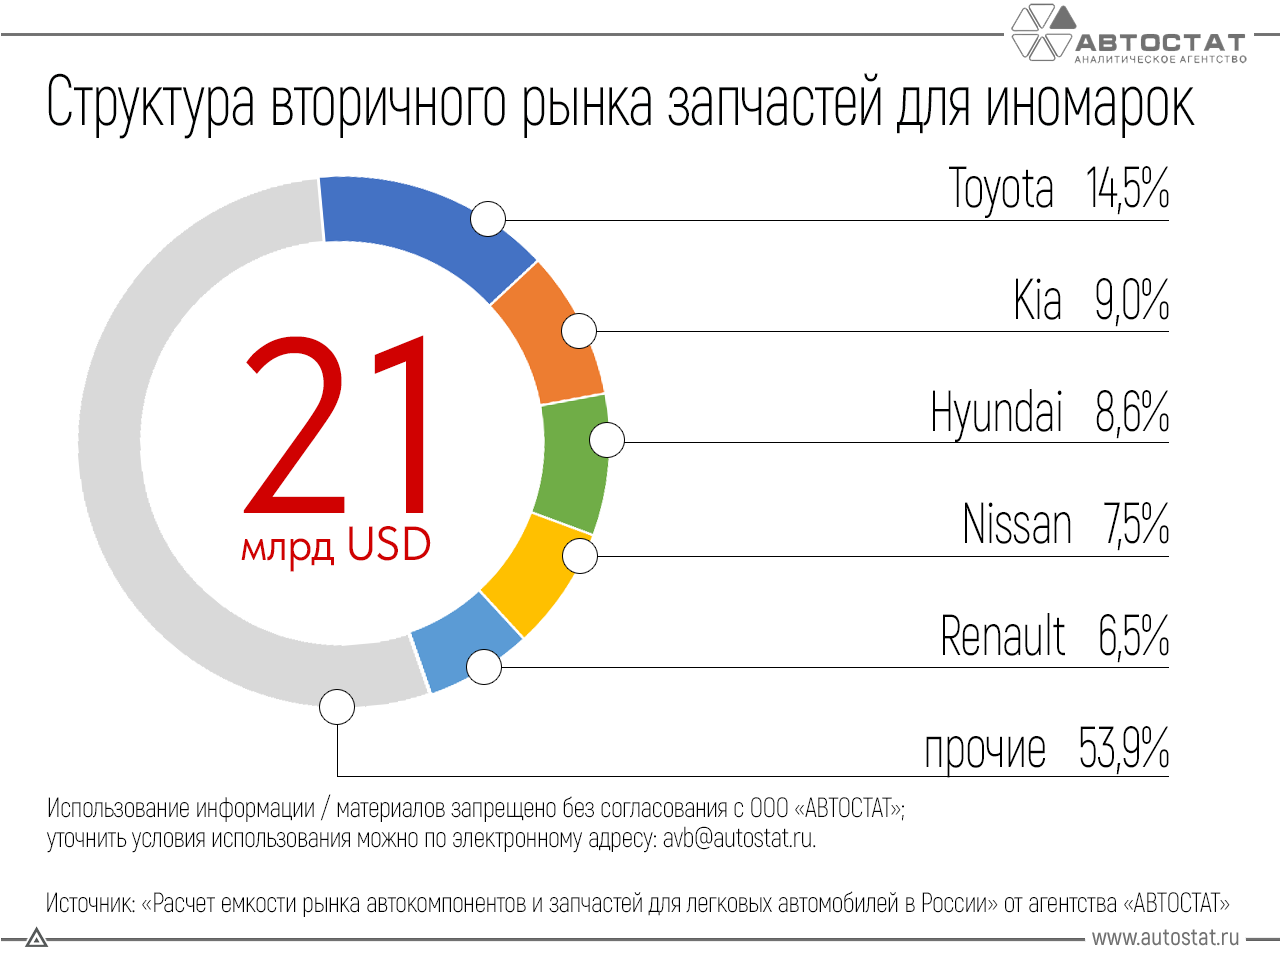 Запчасти для автомобилей марки Toyota чаще покупают подержанными российские водители